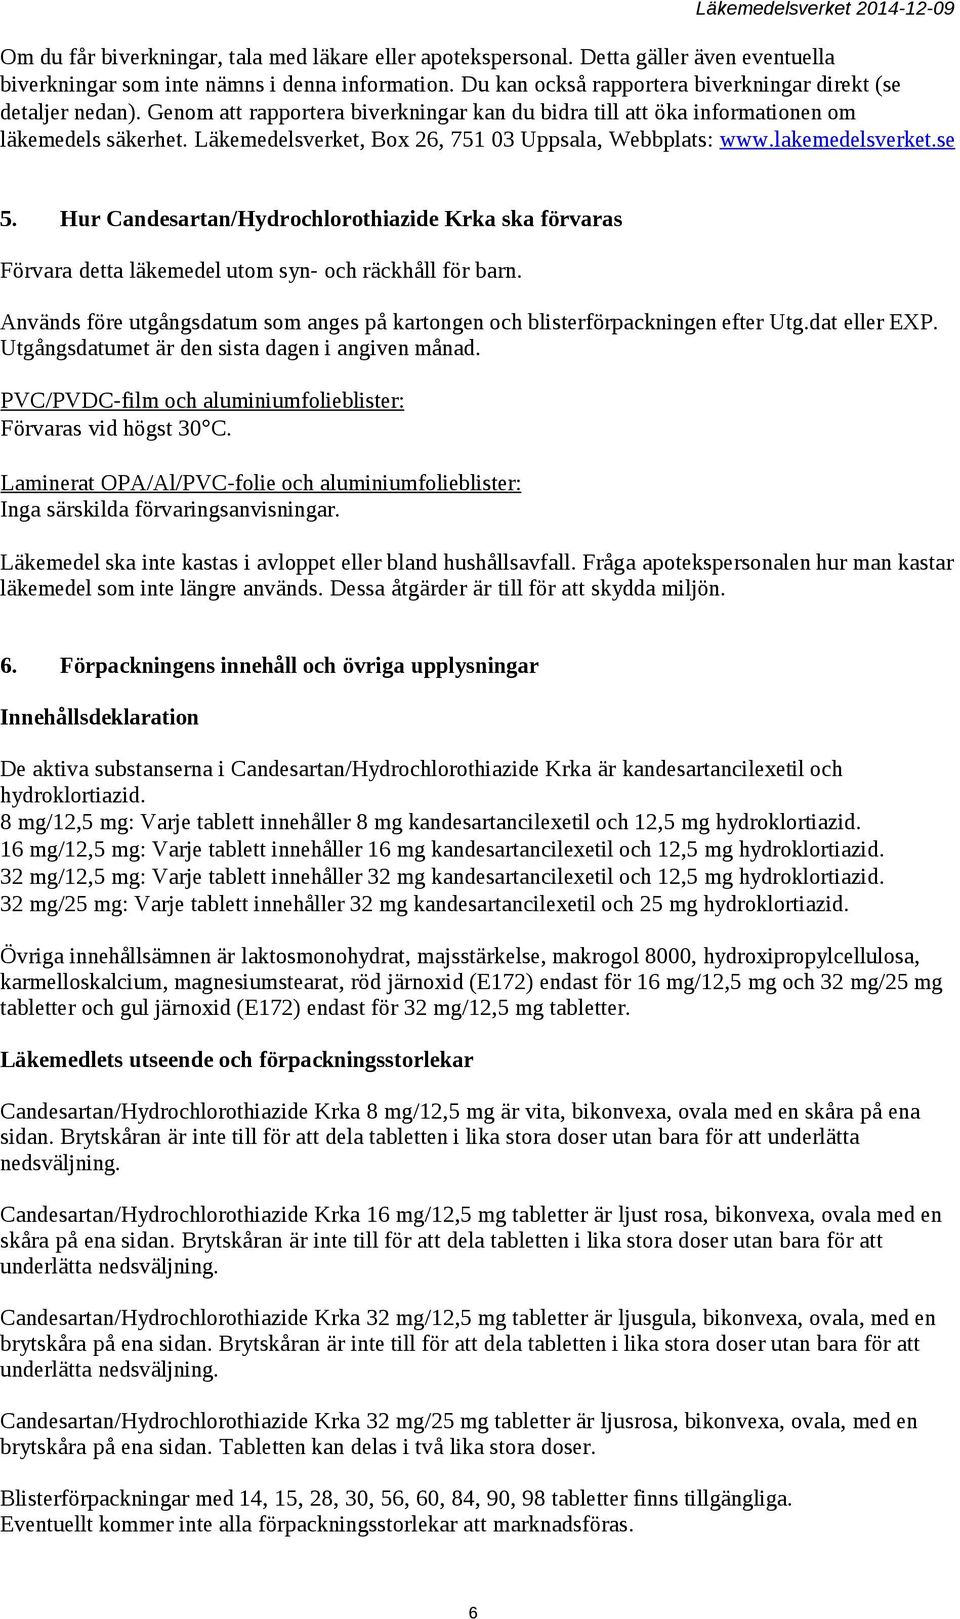 Läkemedelsverket, Box 26, 751 03 Uppsala, Webbplats: www.lakemedelsverket.se 5. Hur Candesartan/Hydrochlorothiazide Krka ska förvaras Förvara detta läkemedel utom syn- och räckhåll för barn.